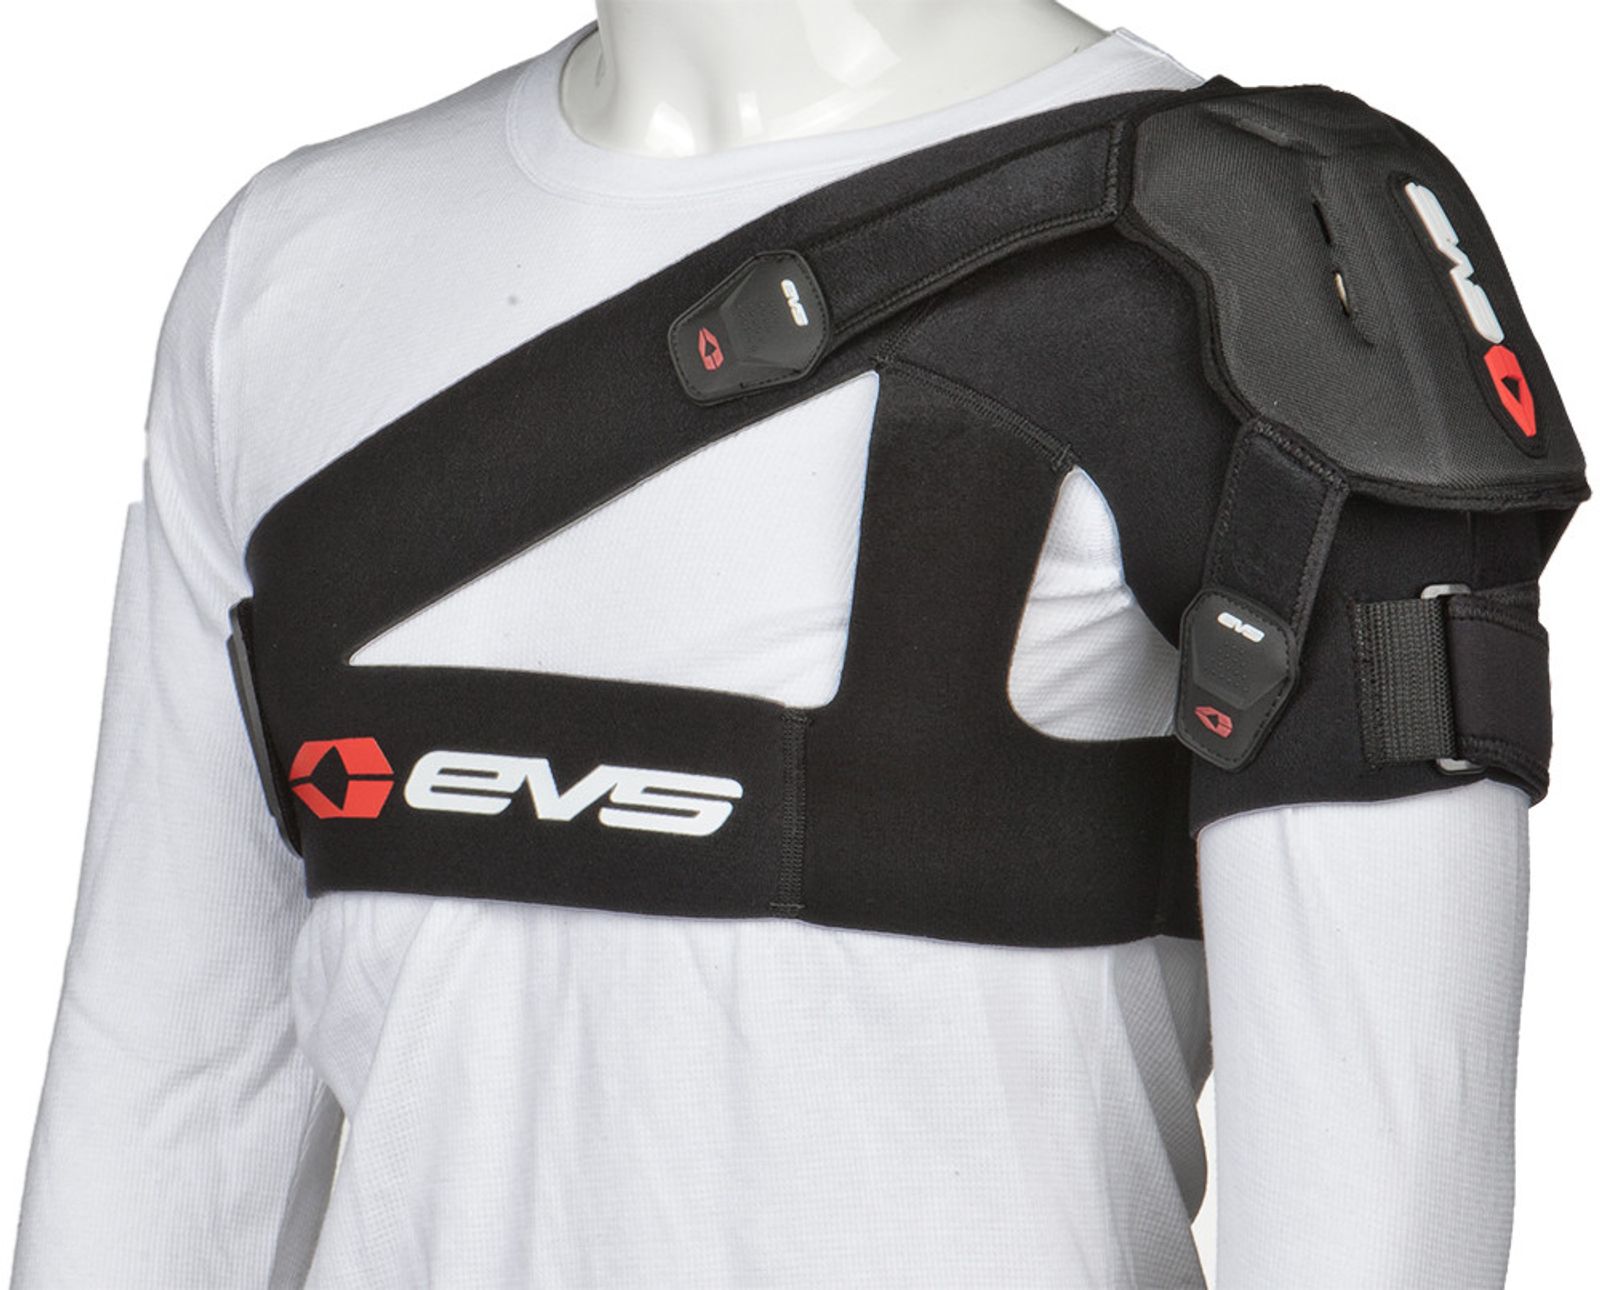 Evs sports SB04 Shoulder Protectors Black